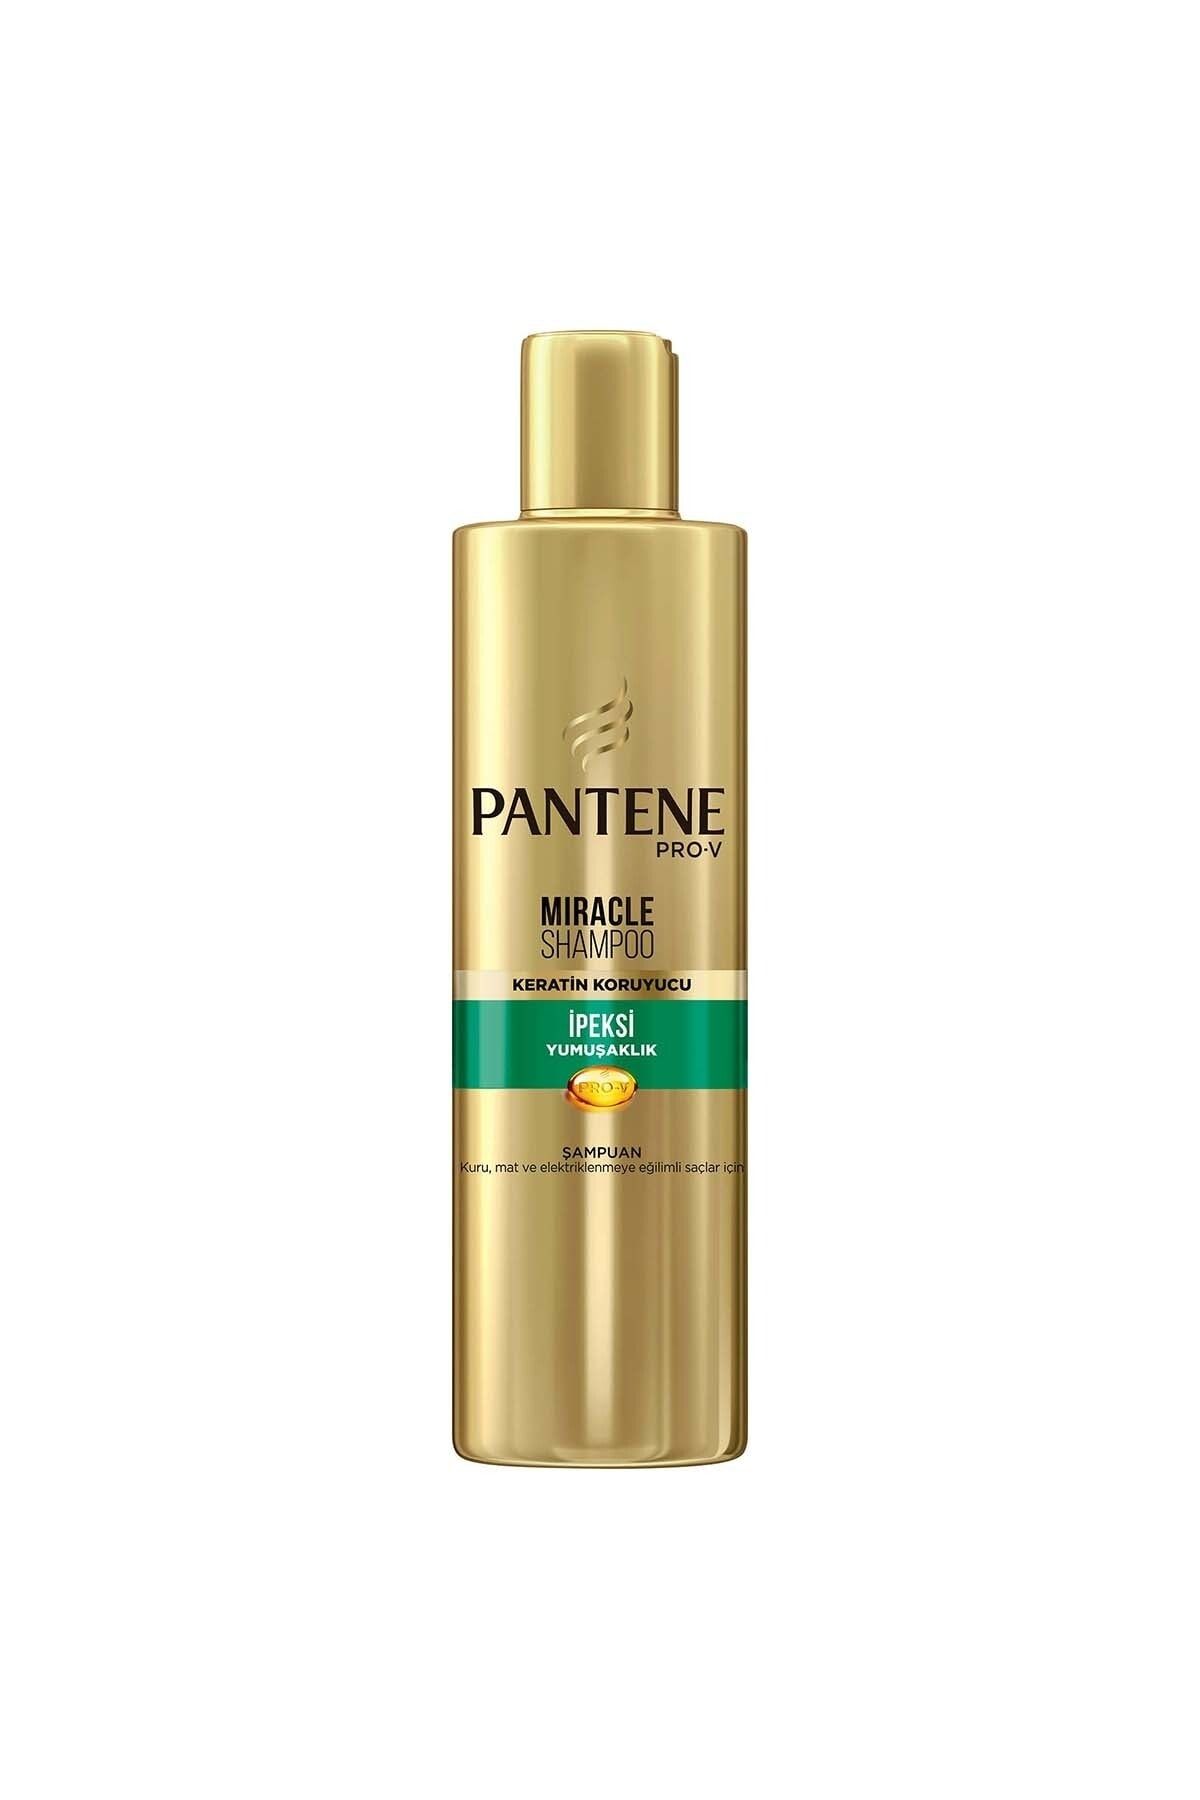 Pantene Miracle Şampuan Ipeksi Yumuşaklık Keratin Koruyuculu 250ml Elektriklenmeye Eğilimli Saçlar